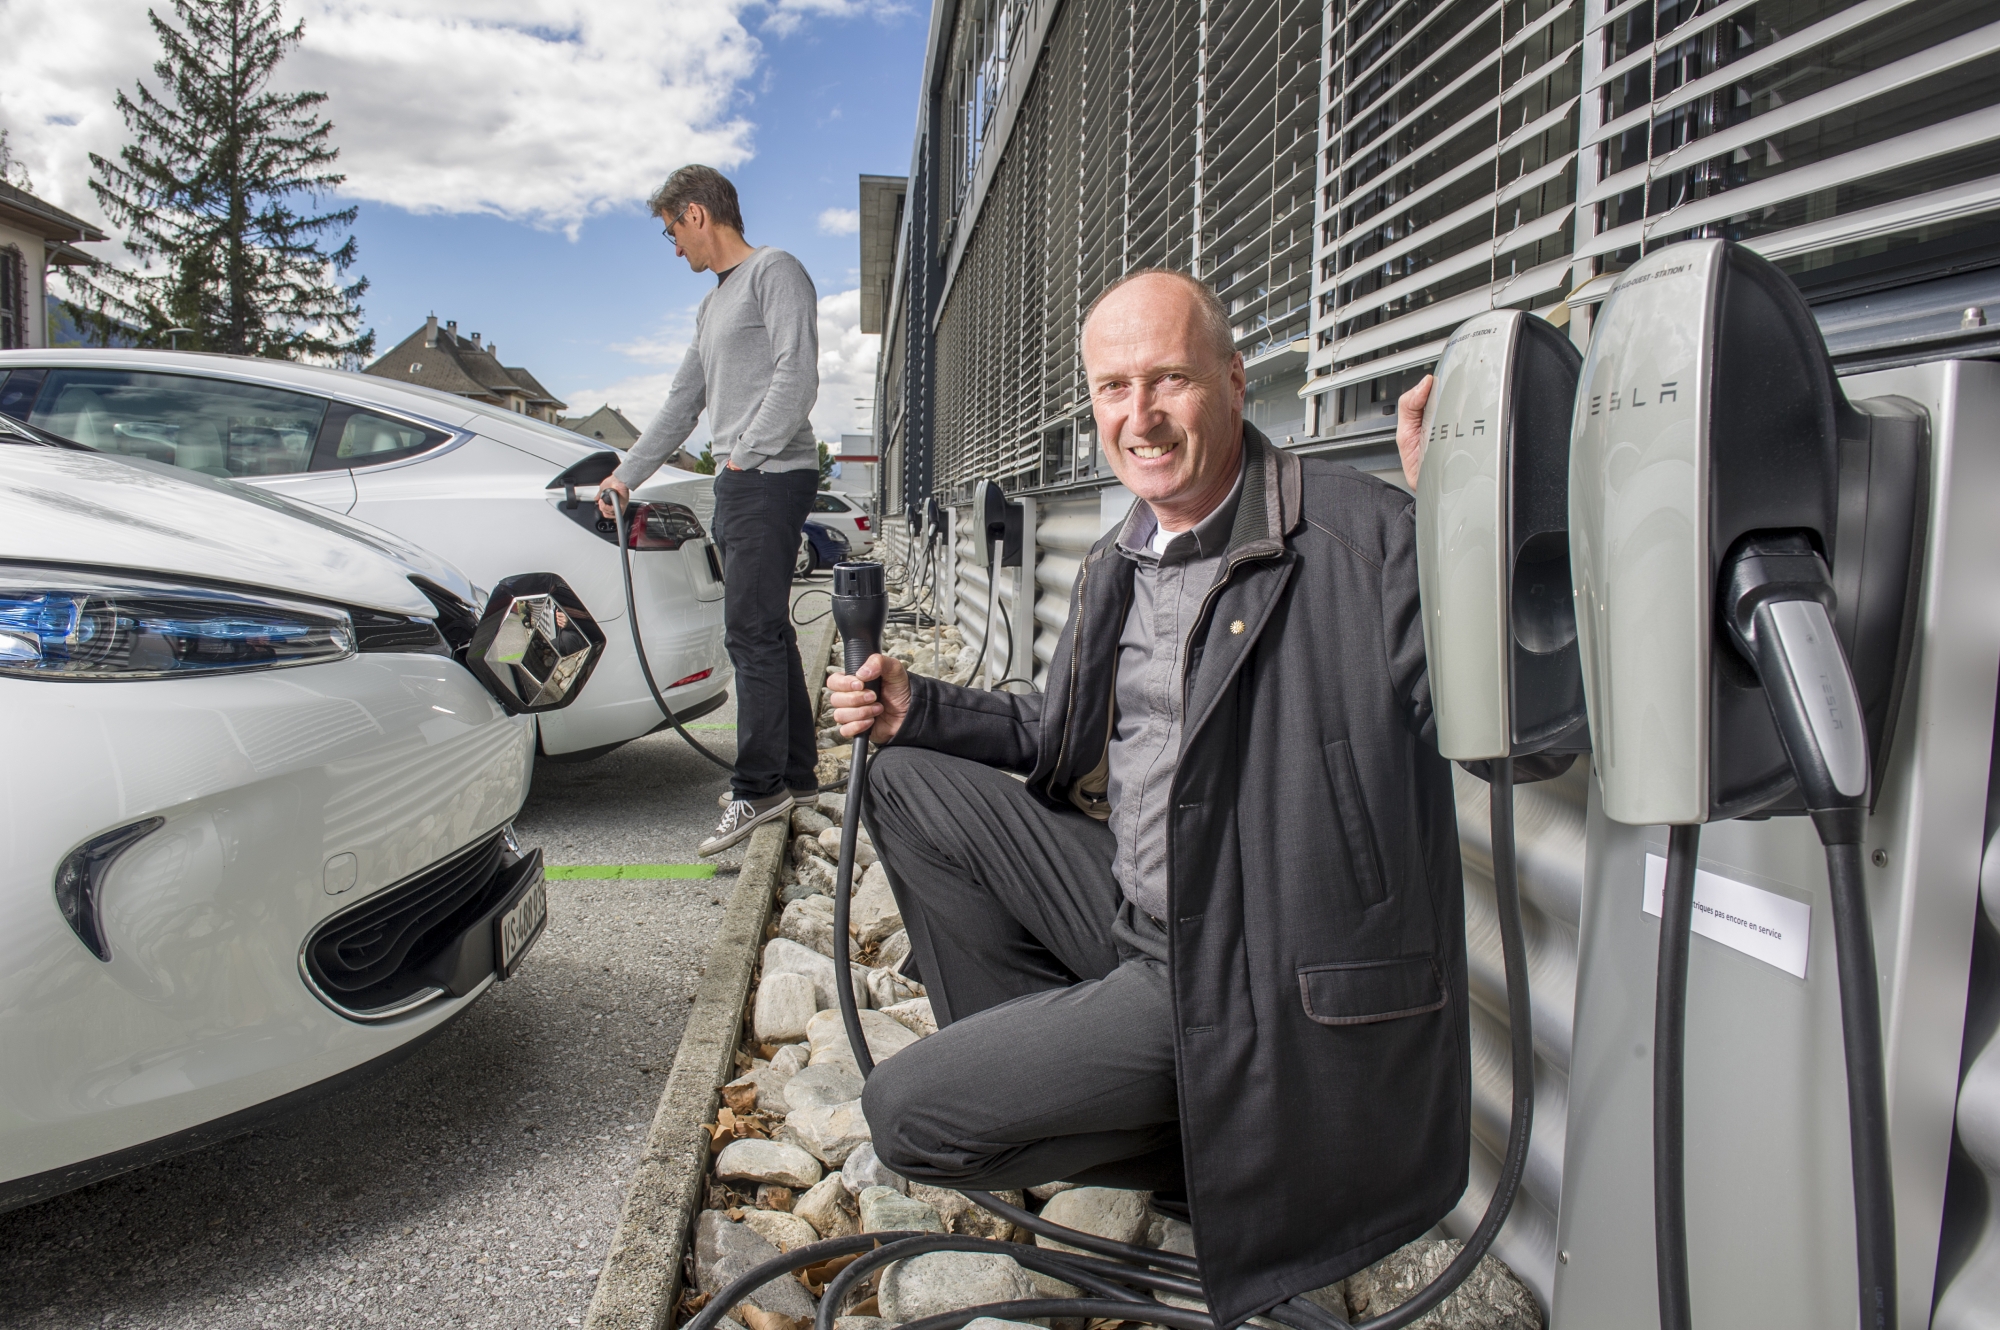 Le Techno-Pôle de Sierre a inauguré ce lundi la mise en service de seize bornes de recharge dédiées aux voitures électriques. Président du conseil d'administration de Techno-Pôle Sierre SA, Laurent Salamin indique qu'il s'agit du plus grand site de recharge pour véhicules électriques sur un lieu de travail, en Suisse.